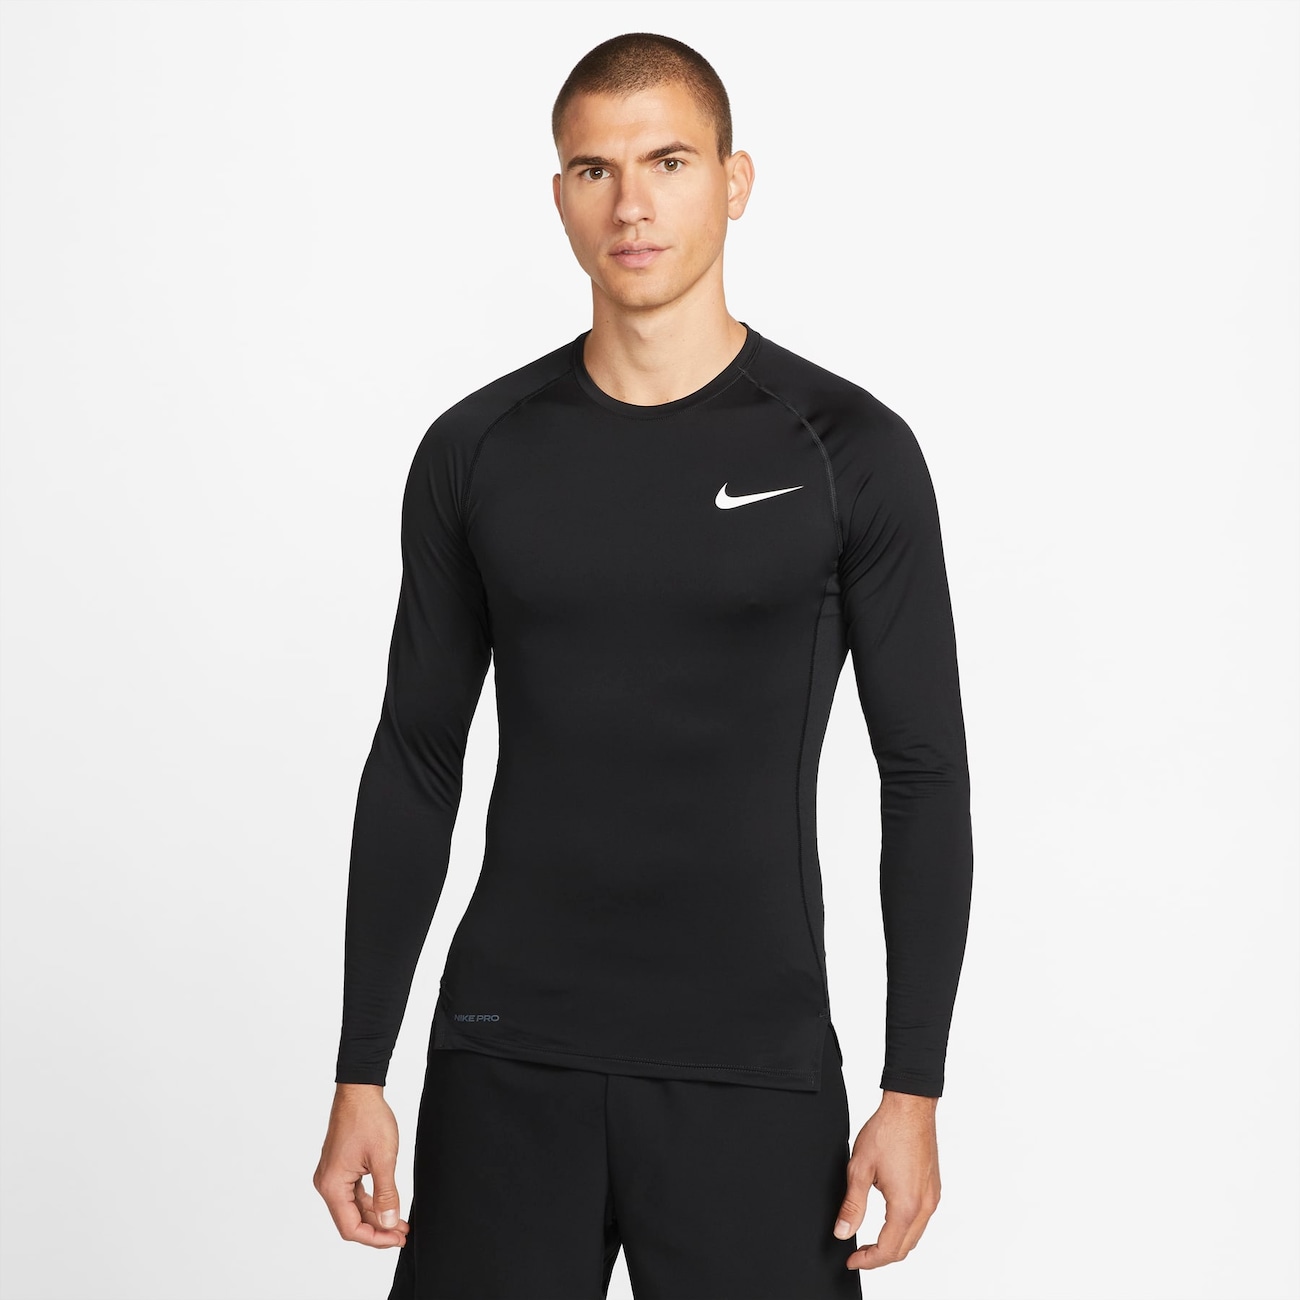 COMPRE 1 LEVE 2] - Camisa de Compressão Nike Pro✔️